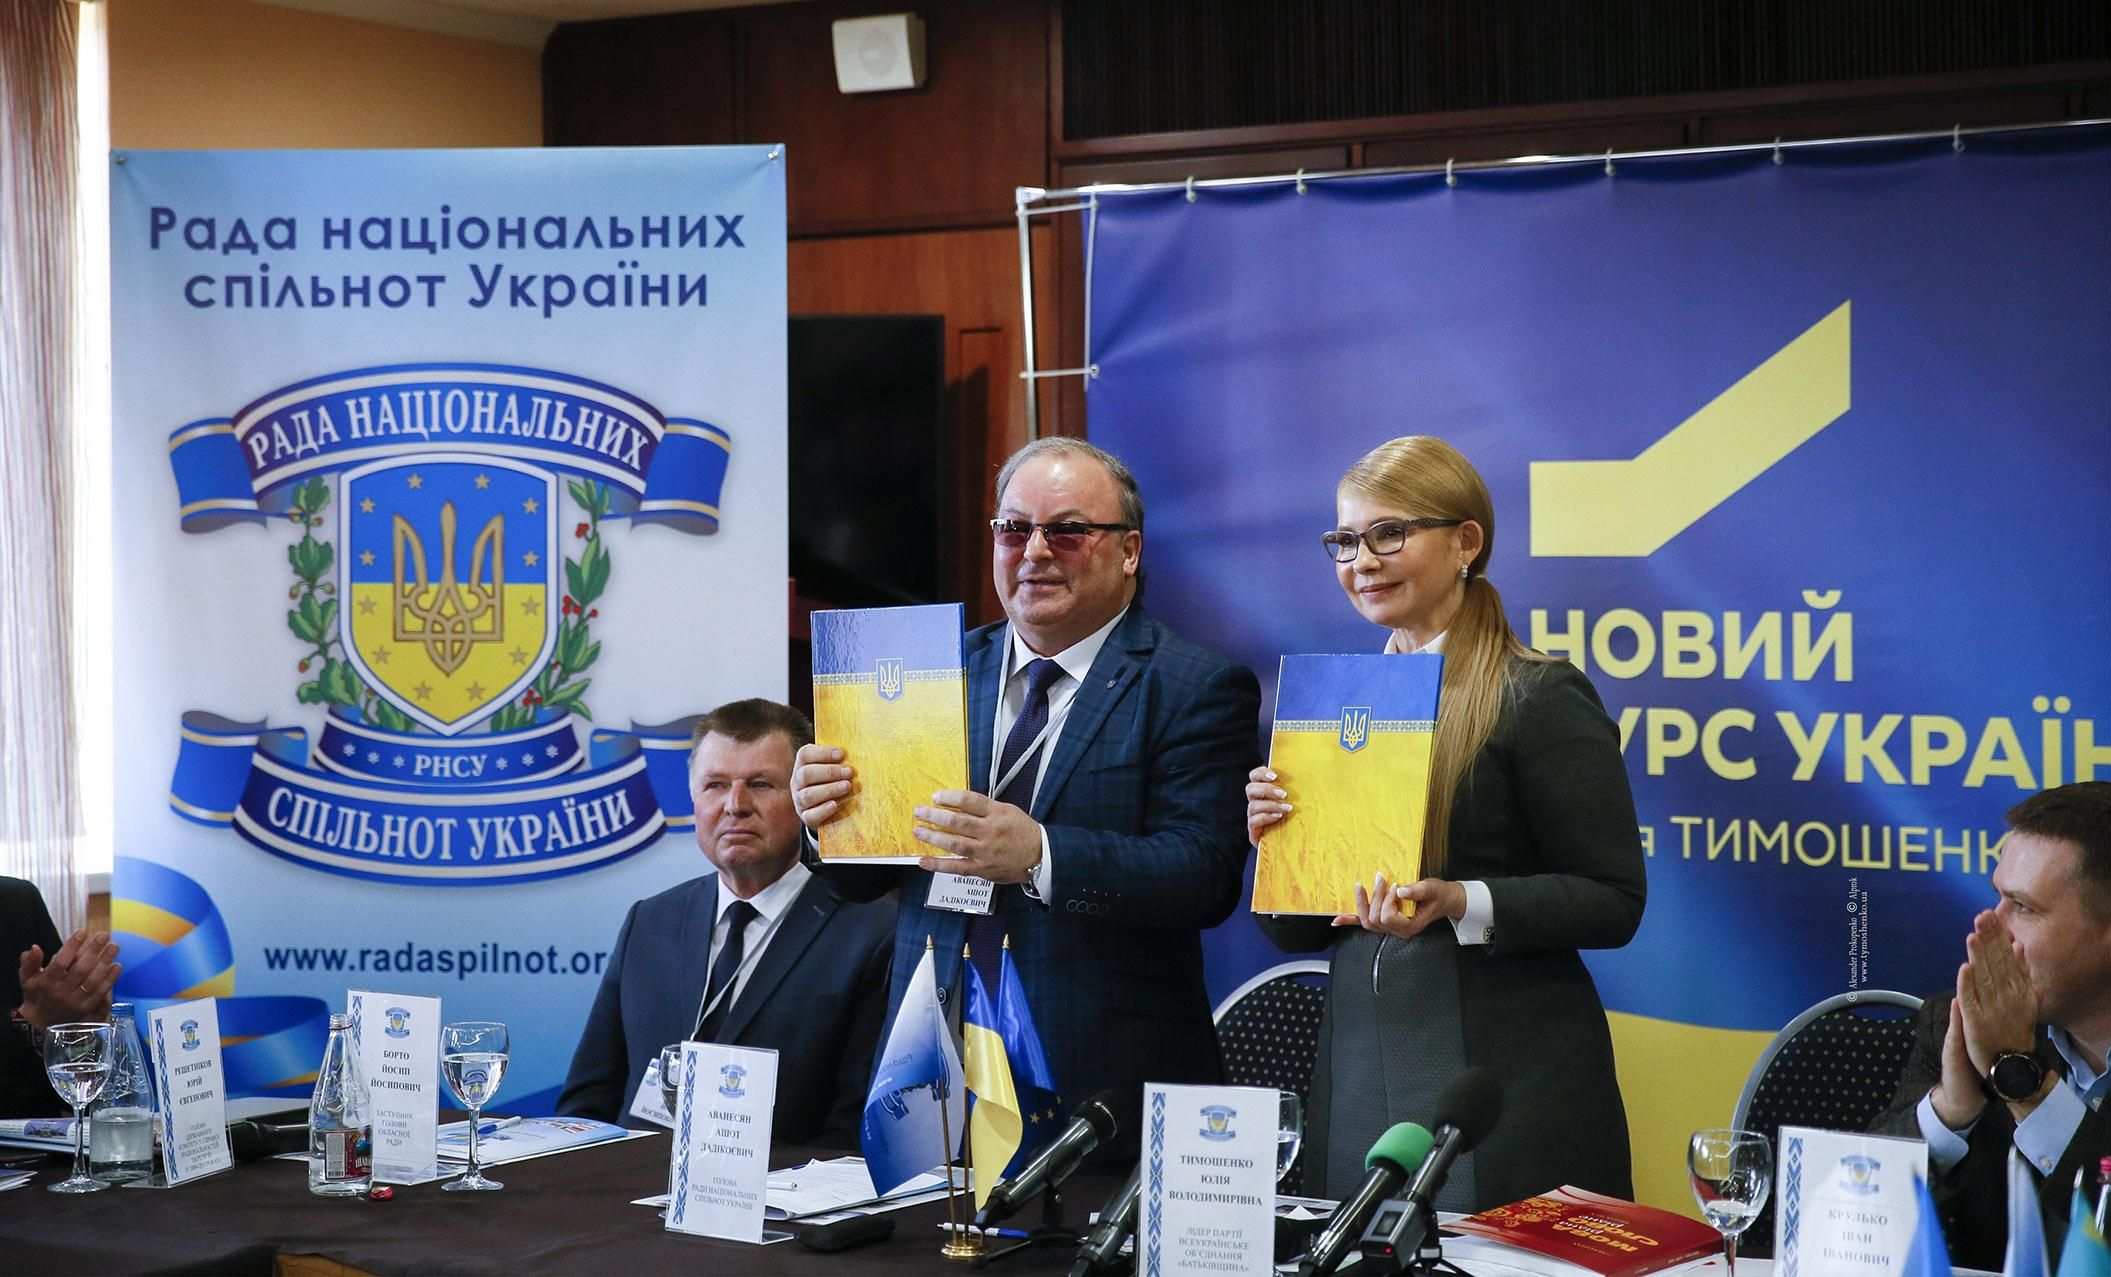 Тимошенко и представители национальных сообществ подписали Хартию межнационального согласия